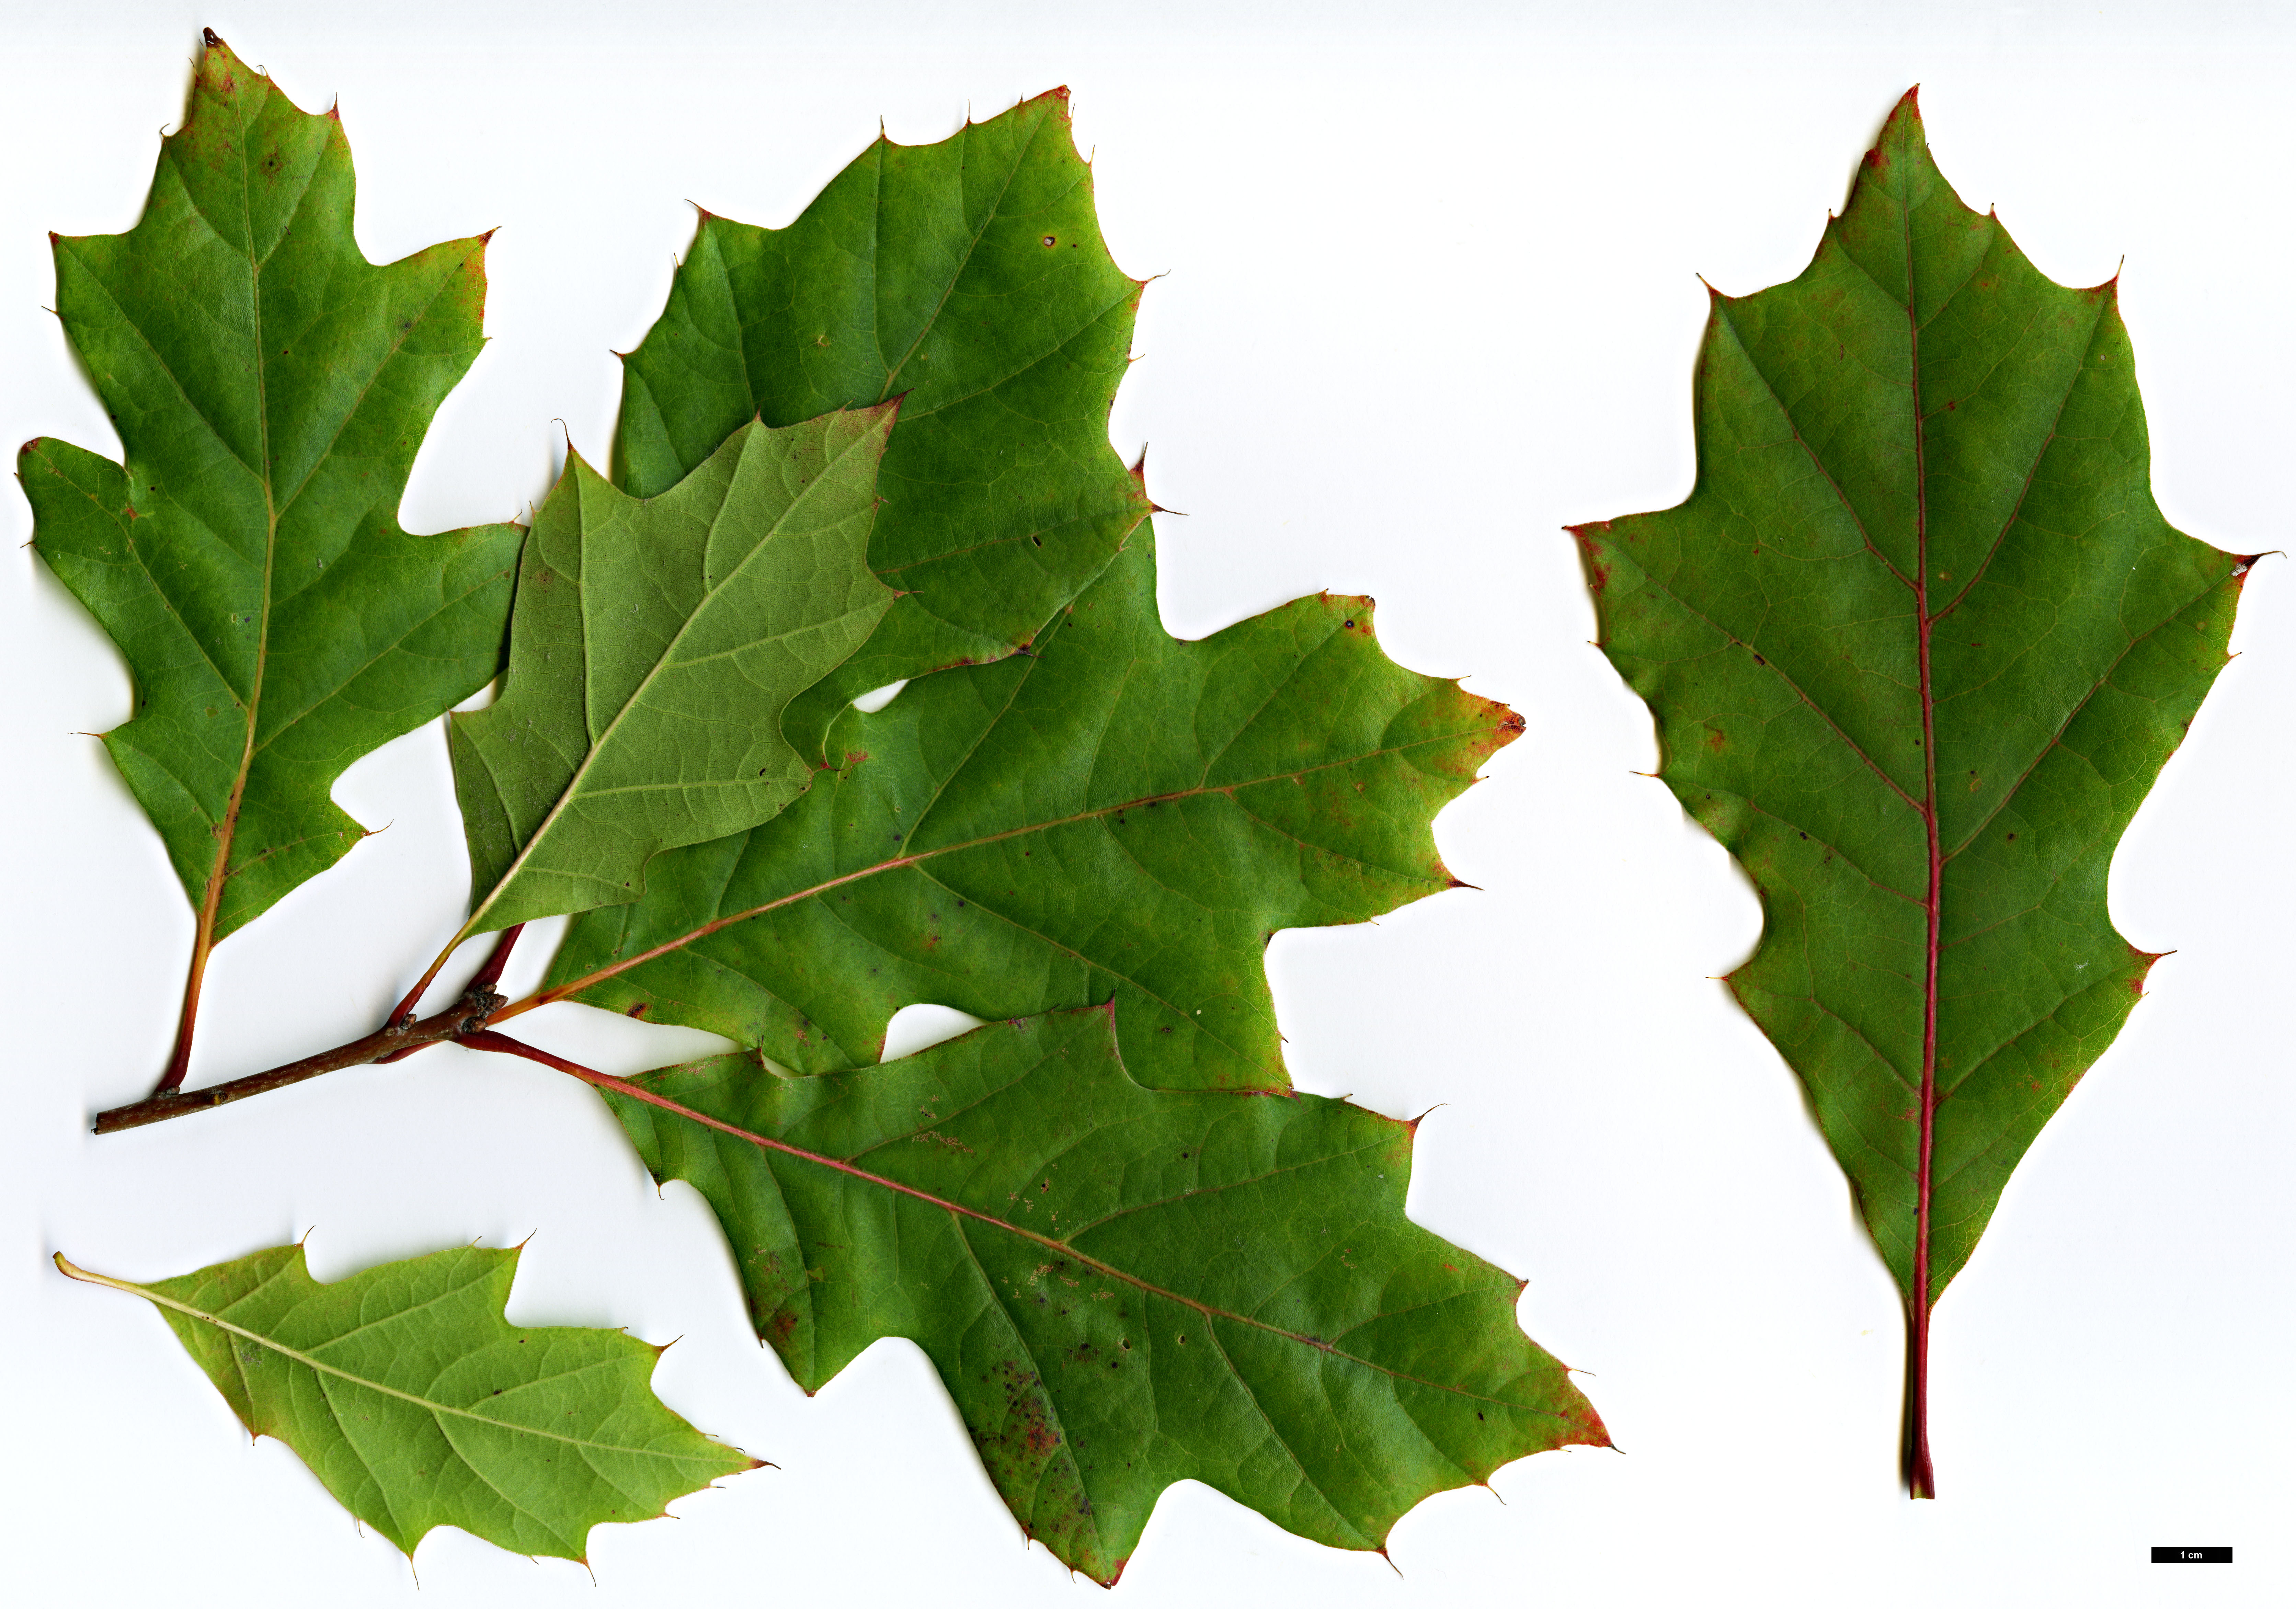 High resolution image: Family: Fagaceae - Genus: Quercus - Taxon: ×runcinata (Q.imbricaria × Q.rubra)